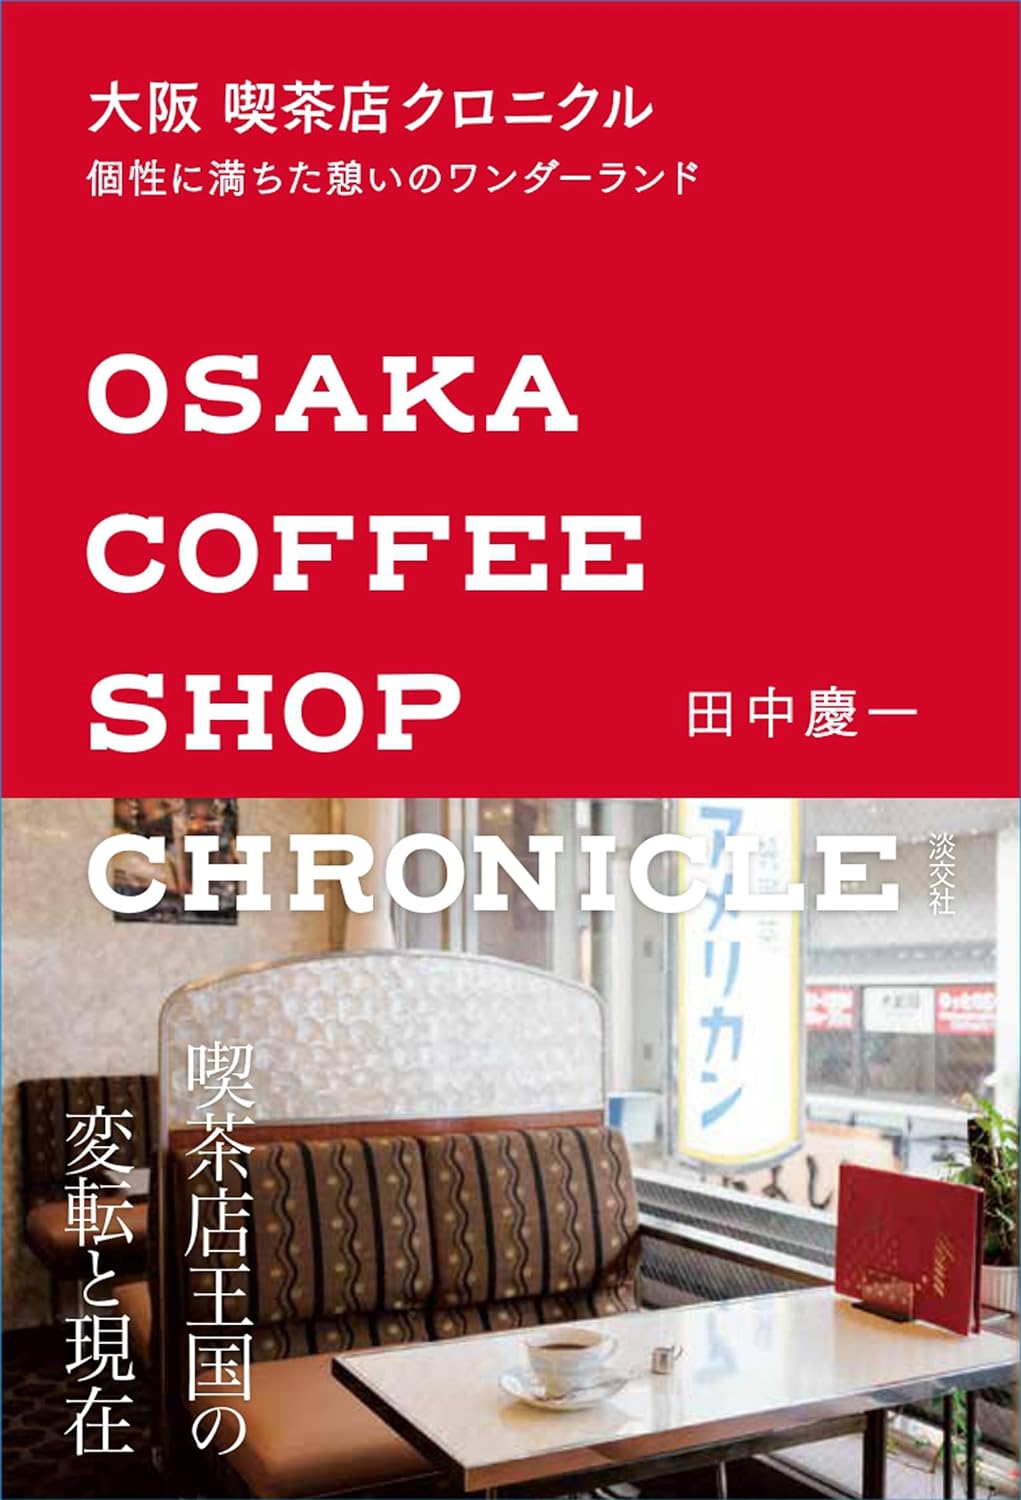 大坂 喫茶店クロニクル: 個性に滿ちた憩いのワンダ-ランド